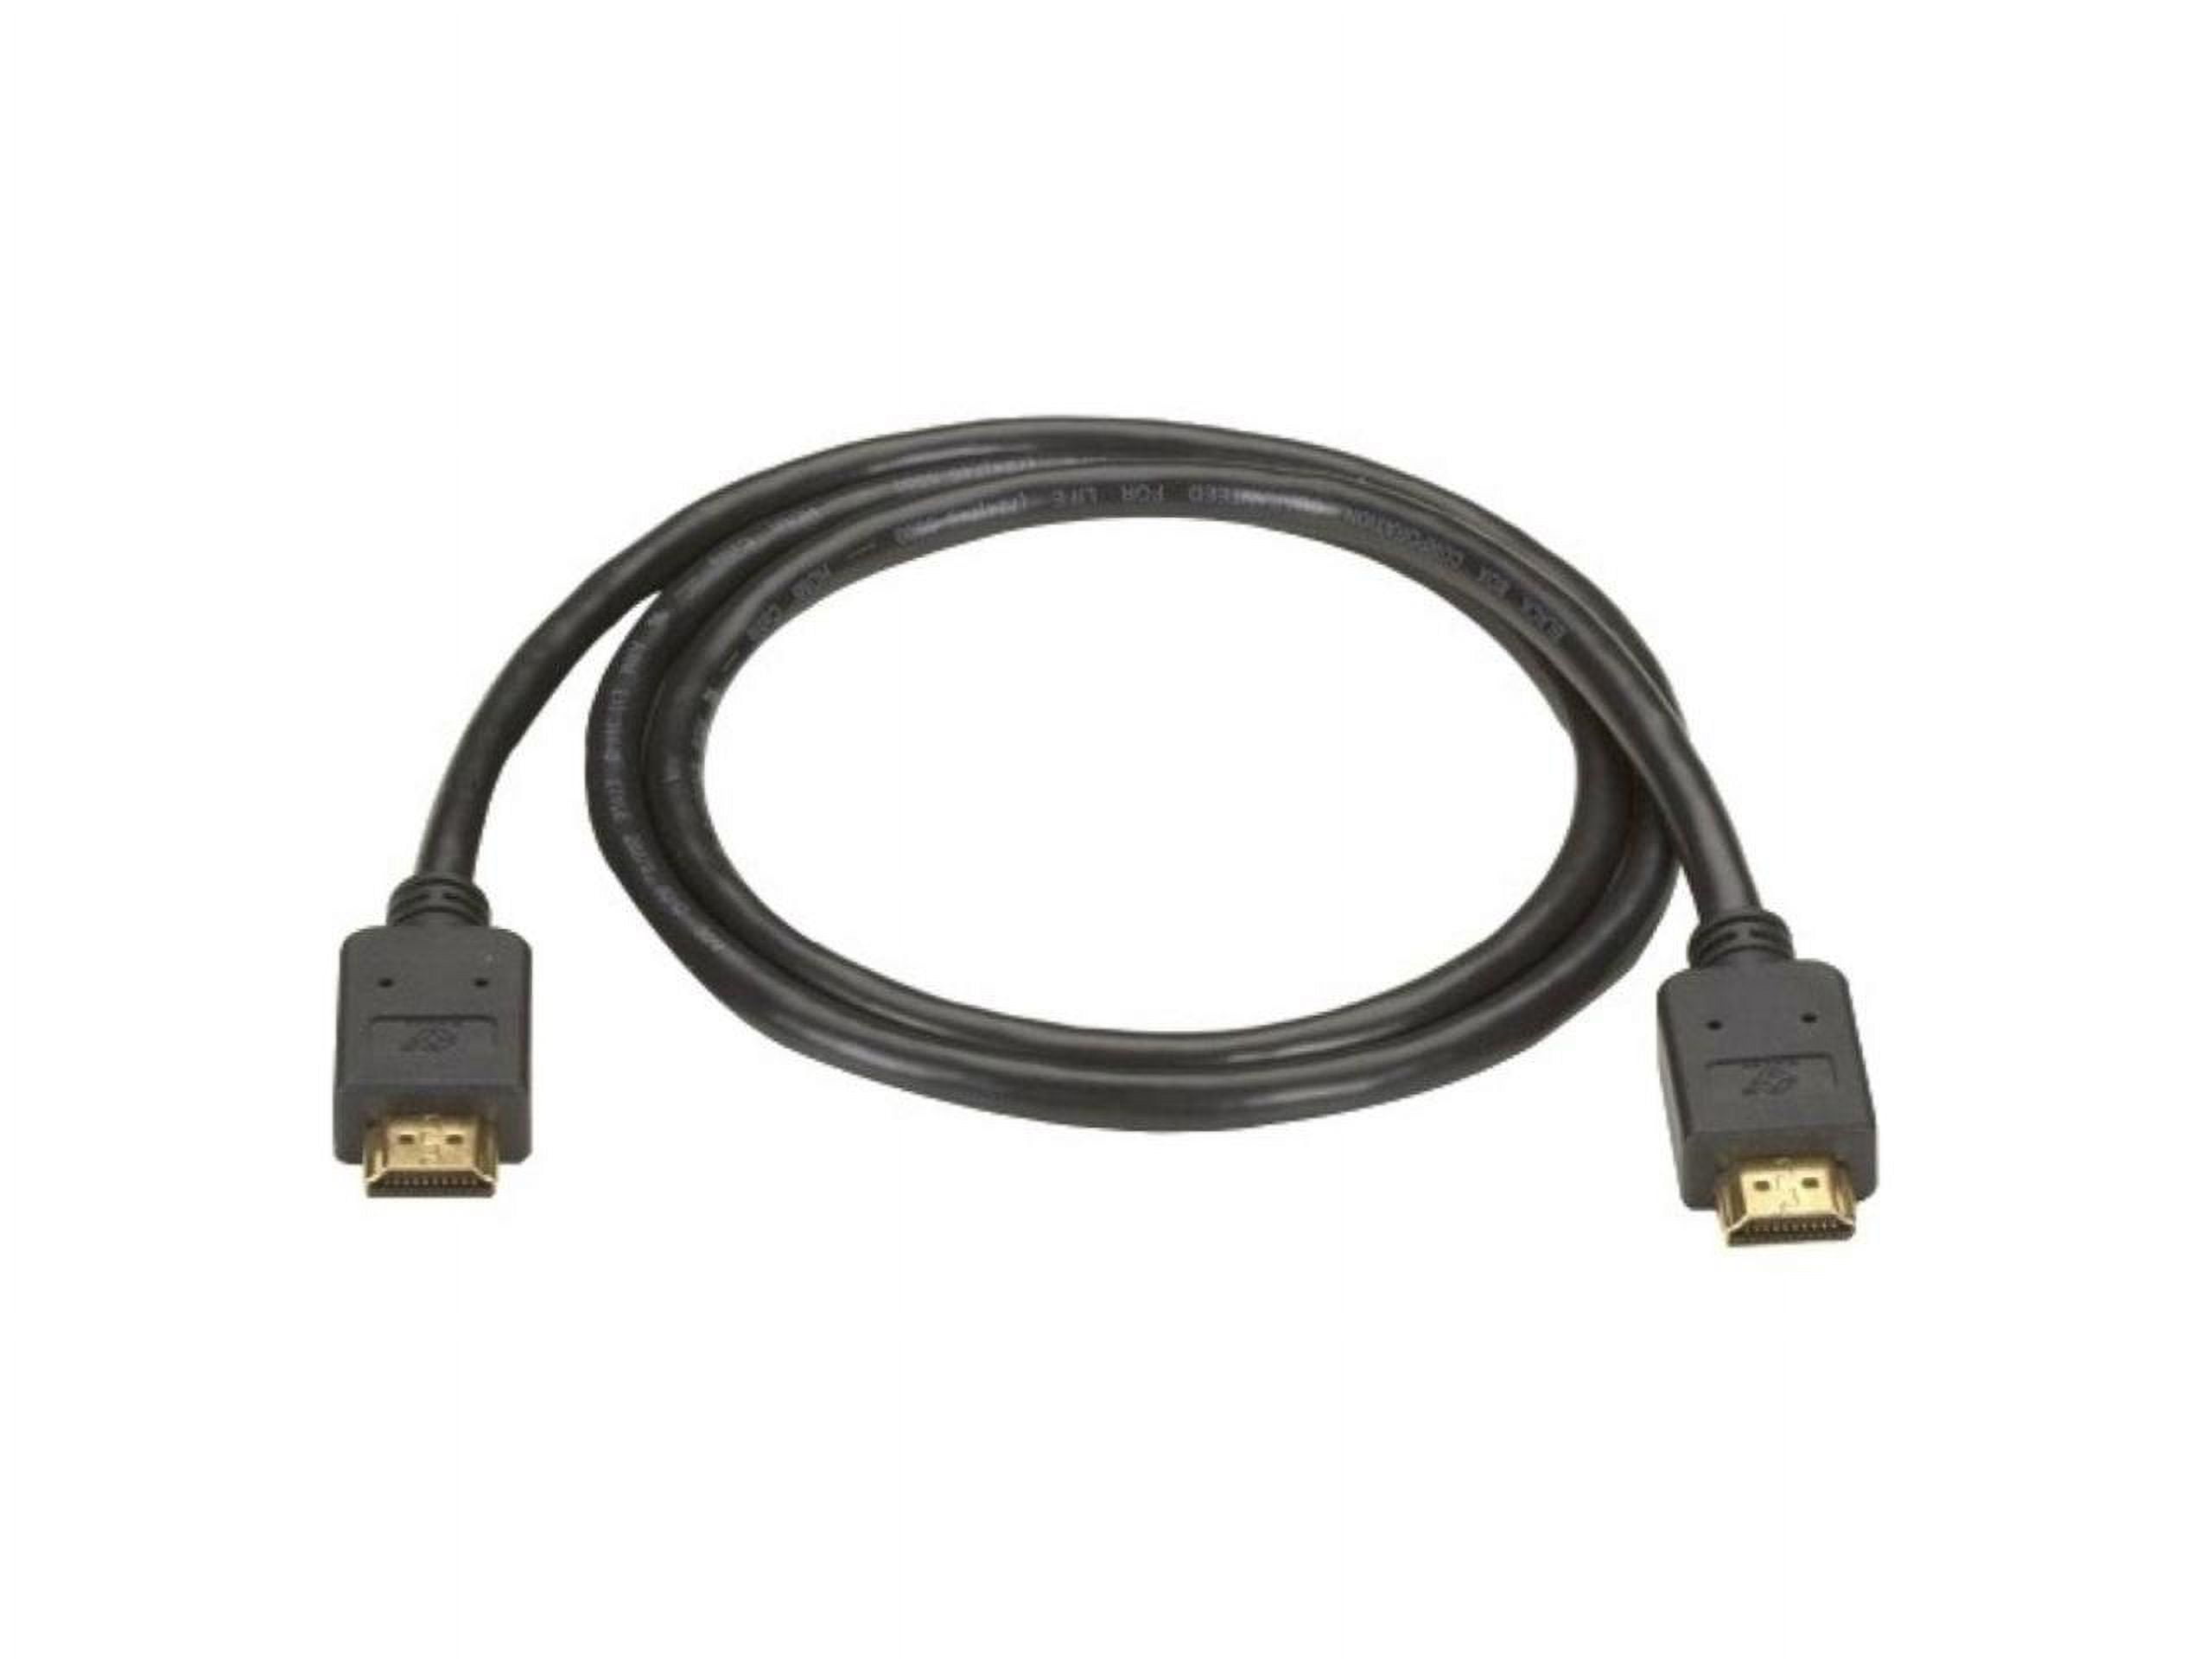 Neomounts HDMI3MM  Neomounts by Newstar Cable alargador HDMI , 1